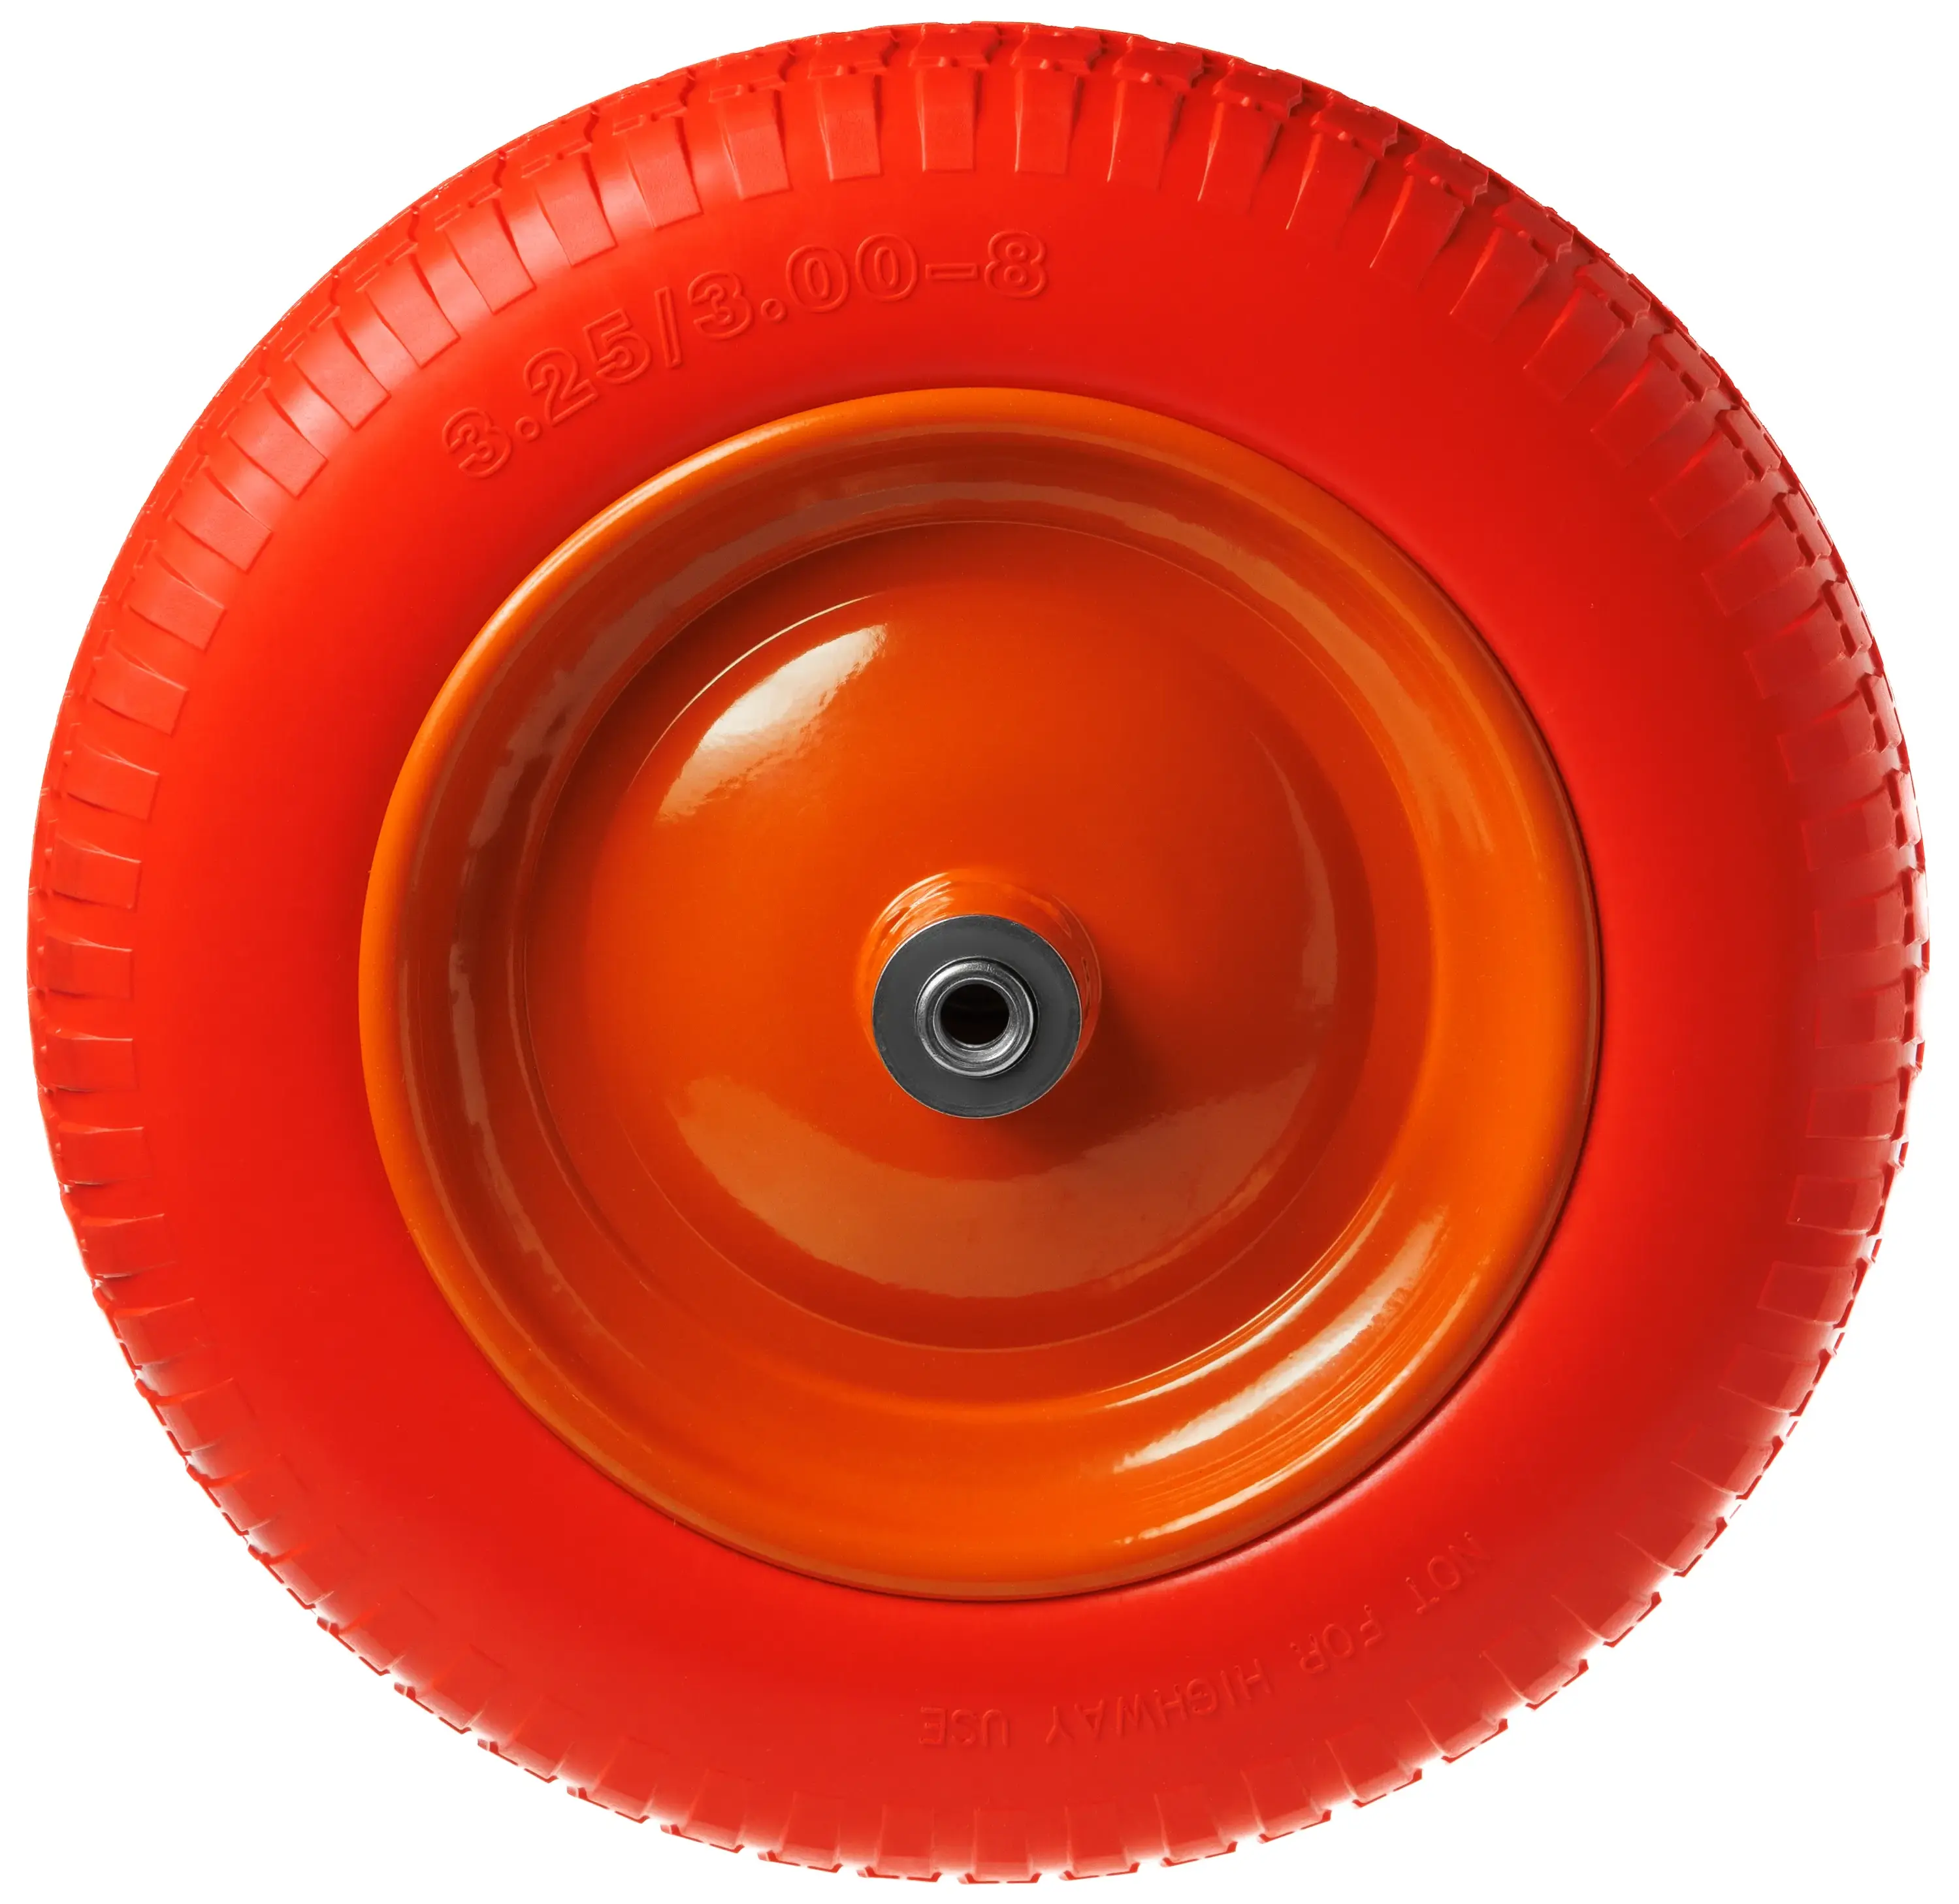 Пенополиуретановое колесо, диаметр 360мм, металлический обод, симметричная ступица, шариковый подшипник, ось 12 мм, 3.25-8 - PU 2400-12